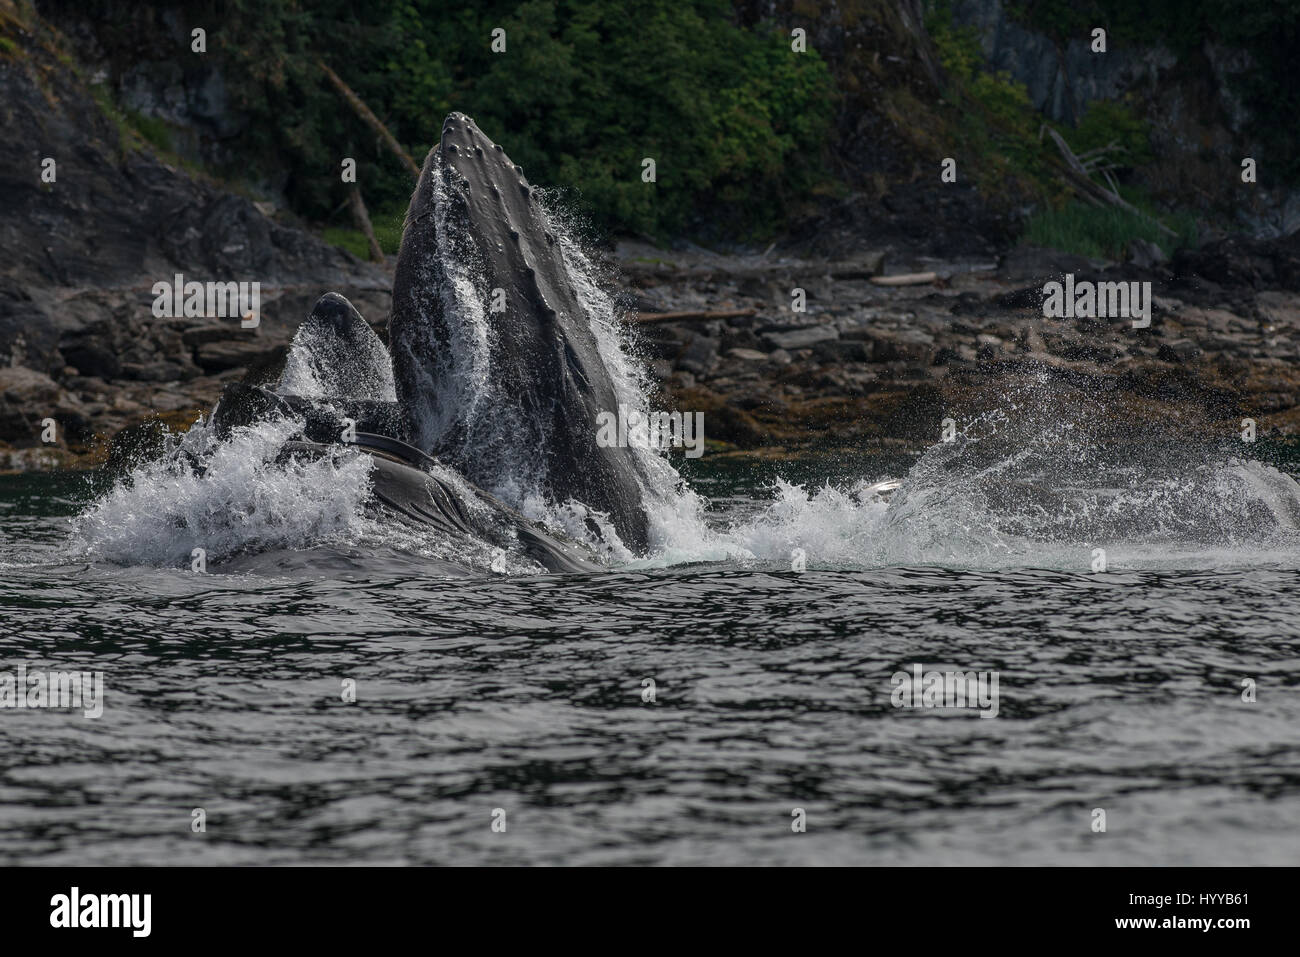 ALASKA, EE.UU.: Las ballenas jorobadas para alimentar la red de burbujas. Espectaculares imágenes de ballenas jorobadas apareciendo para asemejarse a la cordillera como alimentación de red de burbujas que han sido capturados. La increíble serie de fotografías muestran cómo el 34-tonelada ballenas submarina de buceo para cazar su cena de arenque y haga resurgir a digerir rápidamente sus capturas antes de que el pescado puede hacer una escapada. En otra foto, un barco de pescadores ver el espectáculo. Otra imagen muestra un pico de jorobada desaparecen en lo alto de las nubes. Este asombroso encuentro fue capturado por el artista y fotógrafo americano, Scott Methvin (58) en el sur Foto de stock